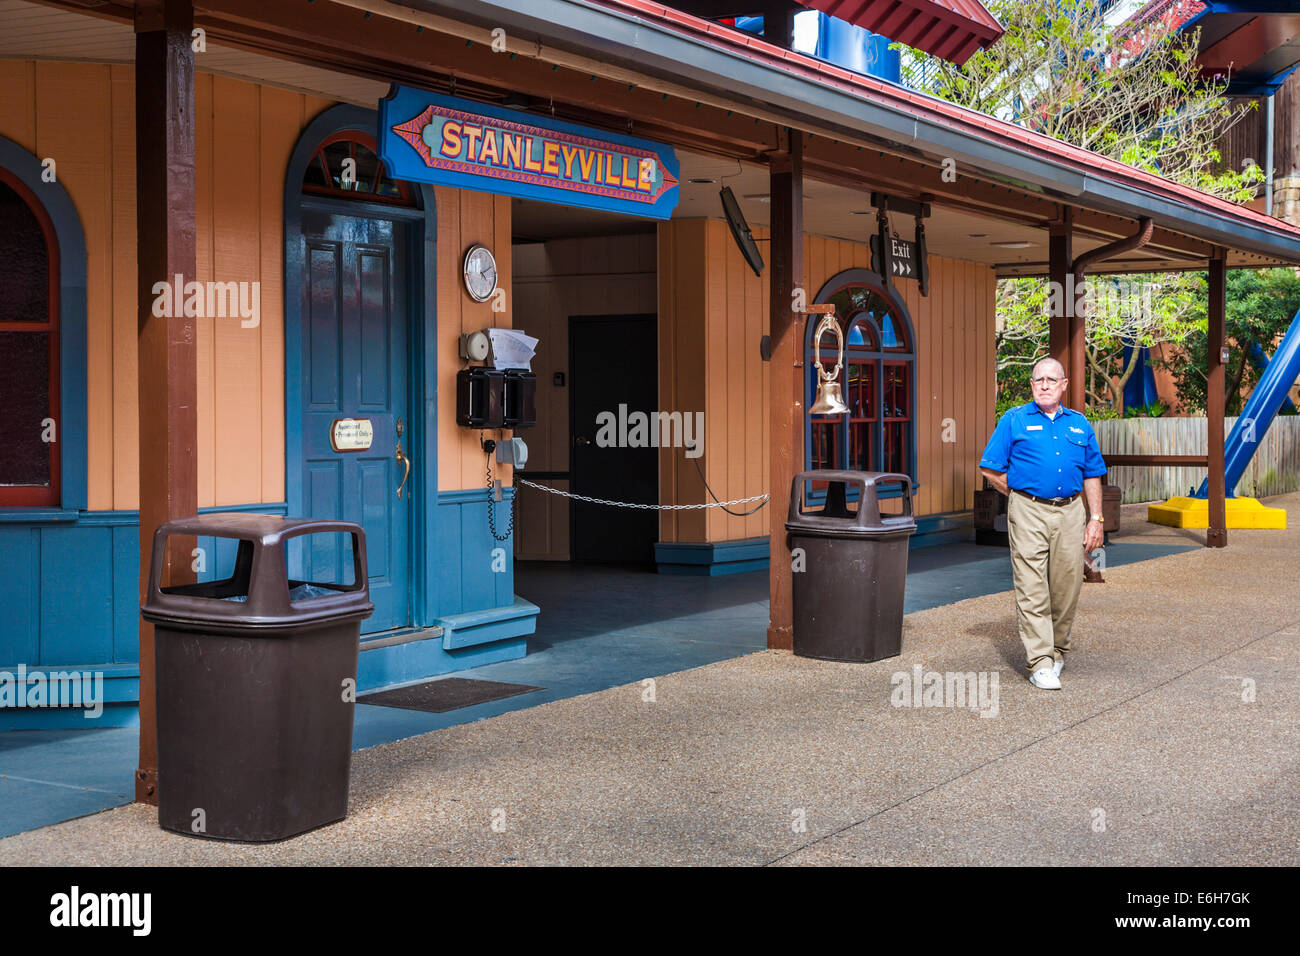 Stanleyville Train Station At Busch Gardens In Tampa Florida